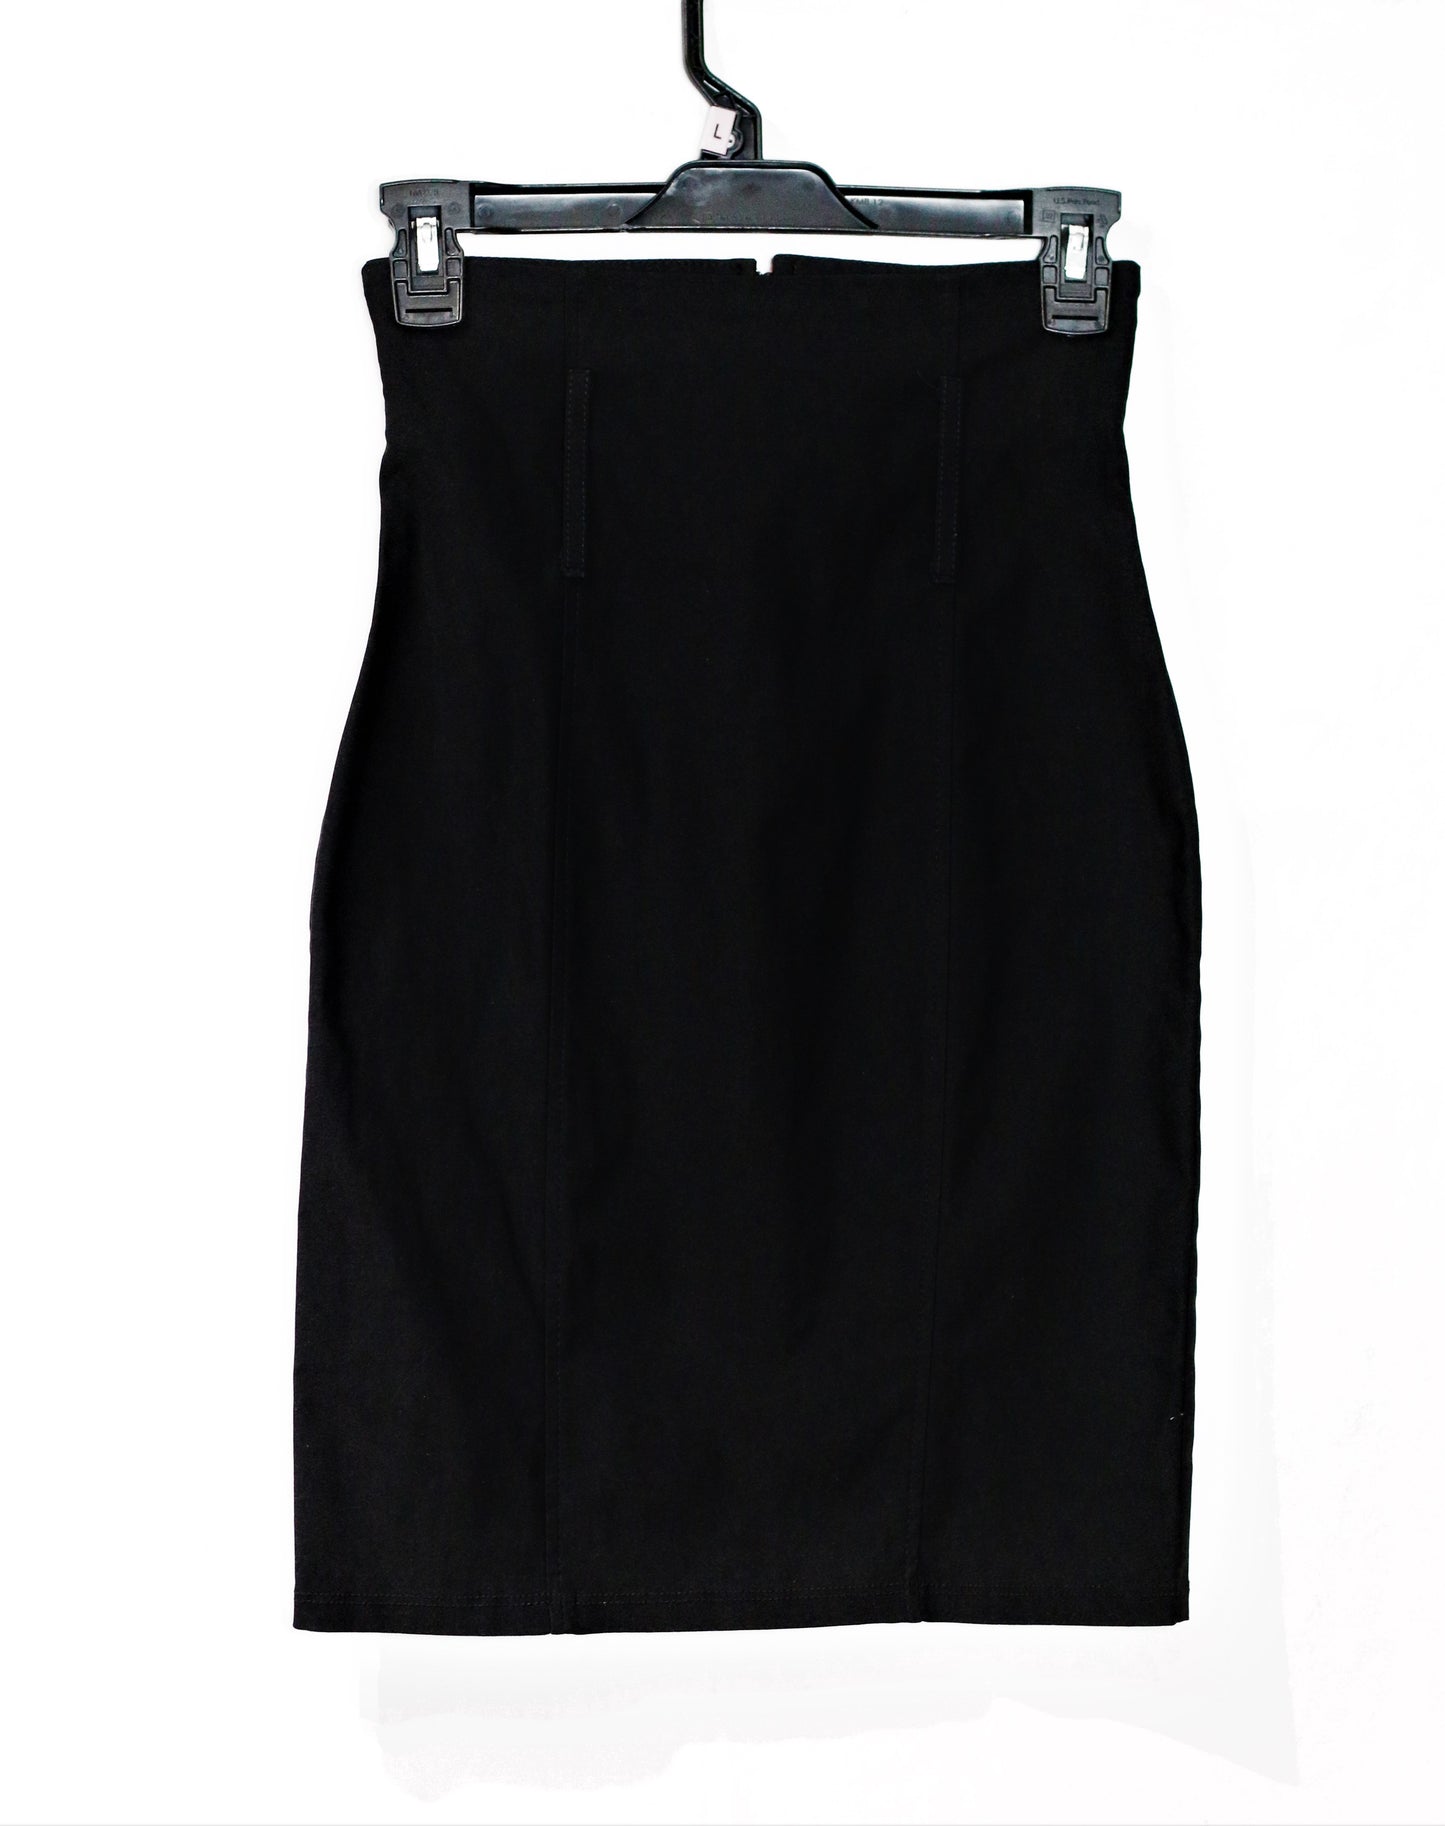 Women's  Black Pencil Skirt